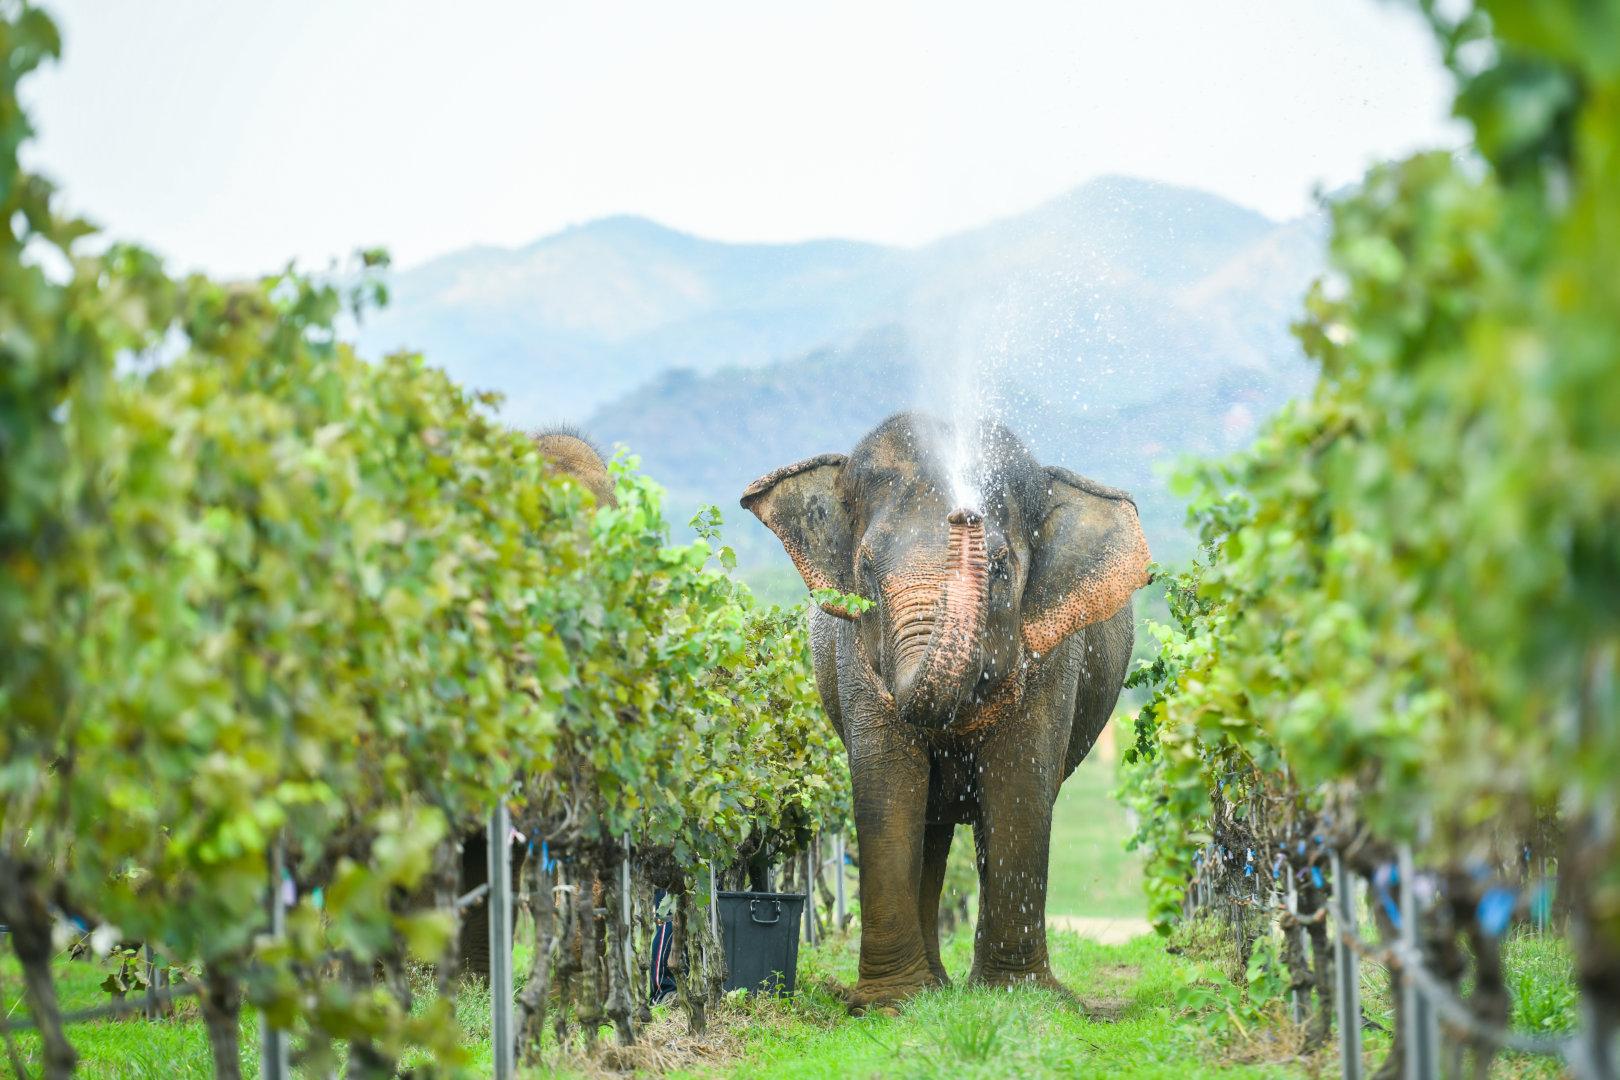 熱帶葡萄酒的質量昇華躍進：泰國「季風谷酒莊」喜迎2021佳年豐收！ - WineNow HK